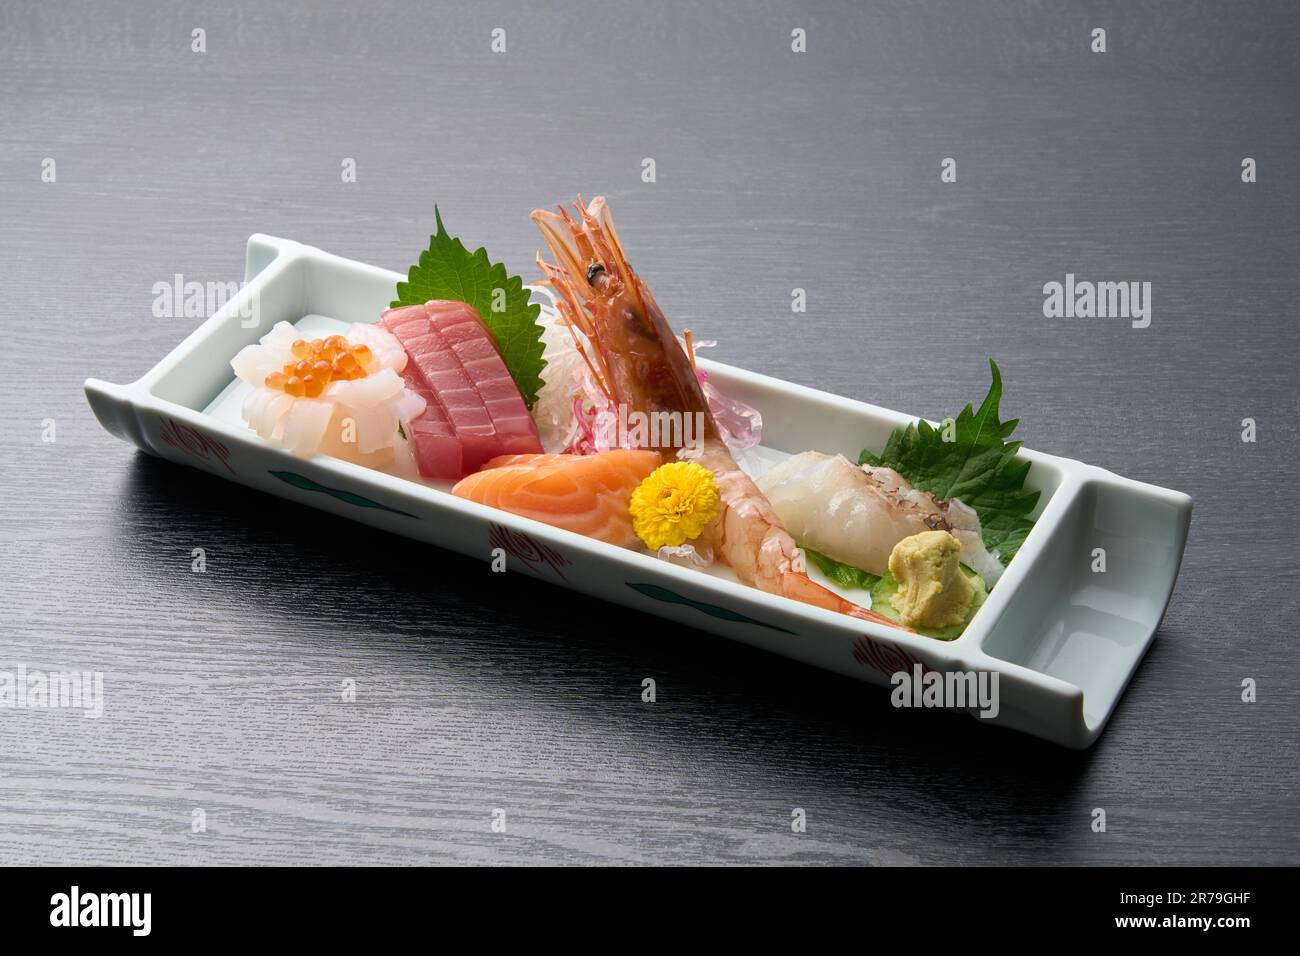 Cuisine japonaise, plateau de sashimi de poisson frais Banque D'Images